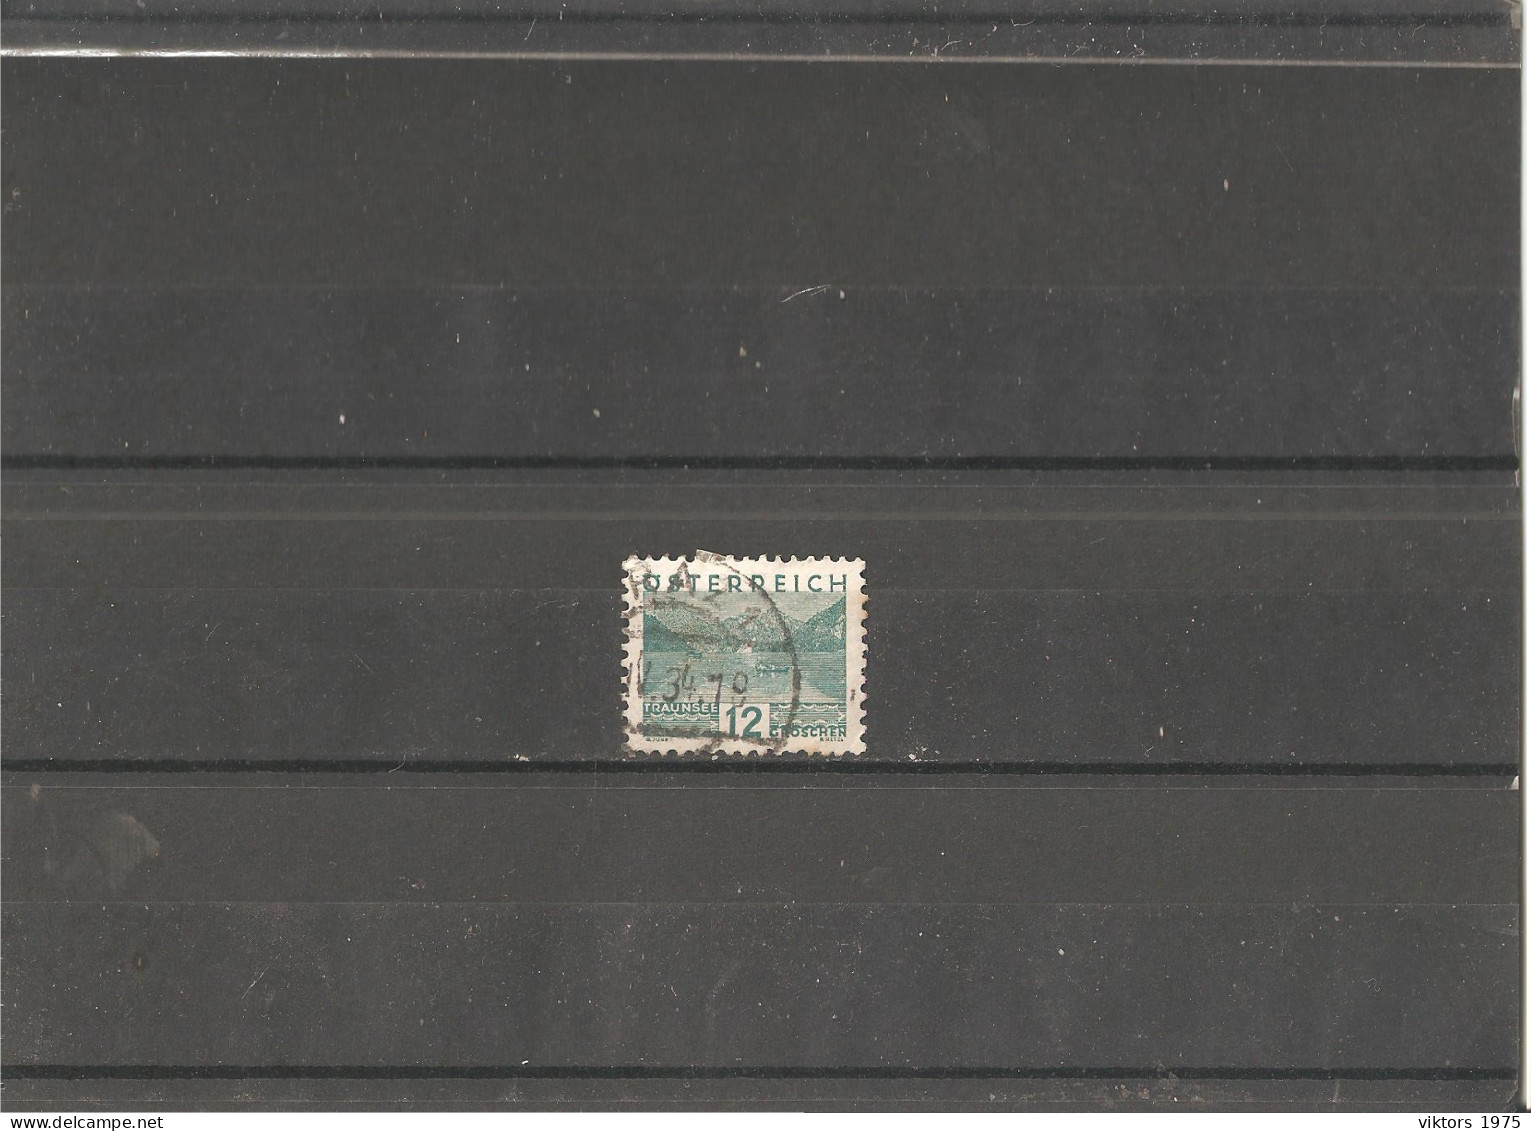 Used Stamp Nr.531 In MICHEL Catalog - Usati